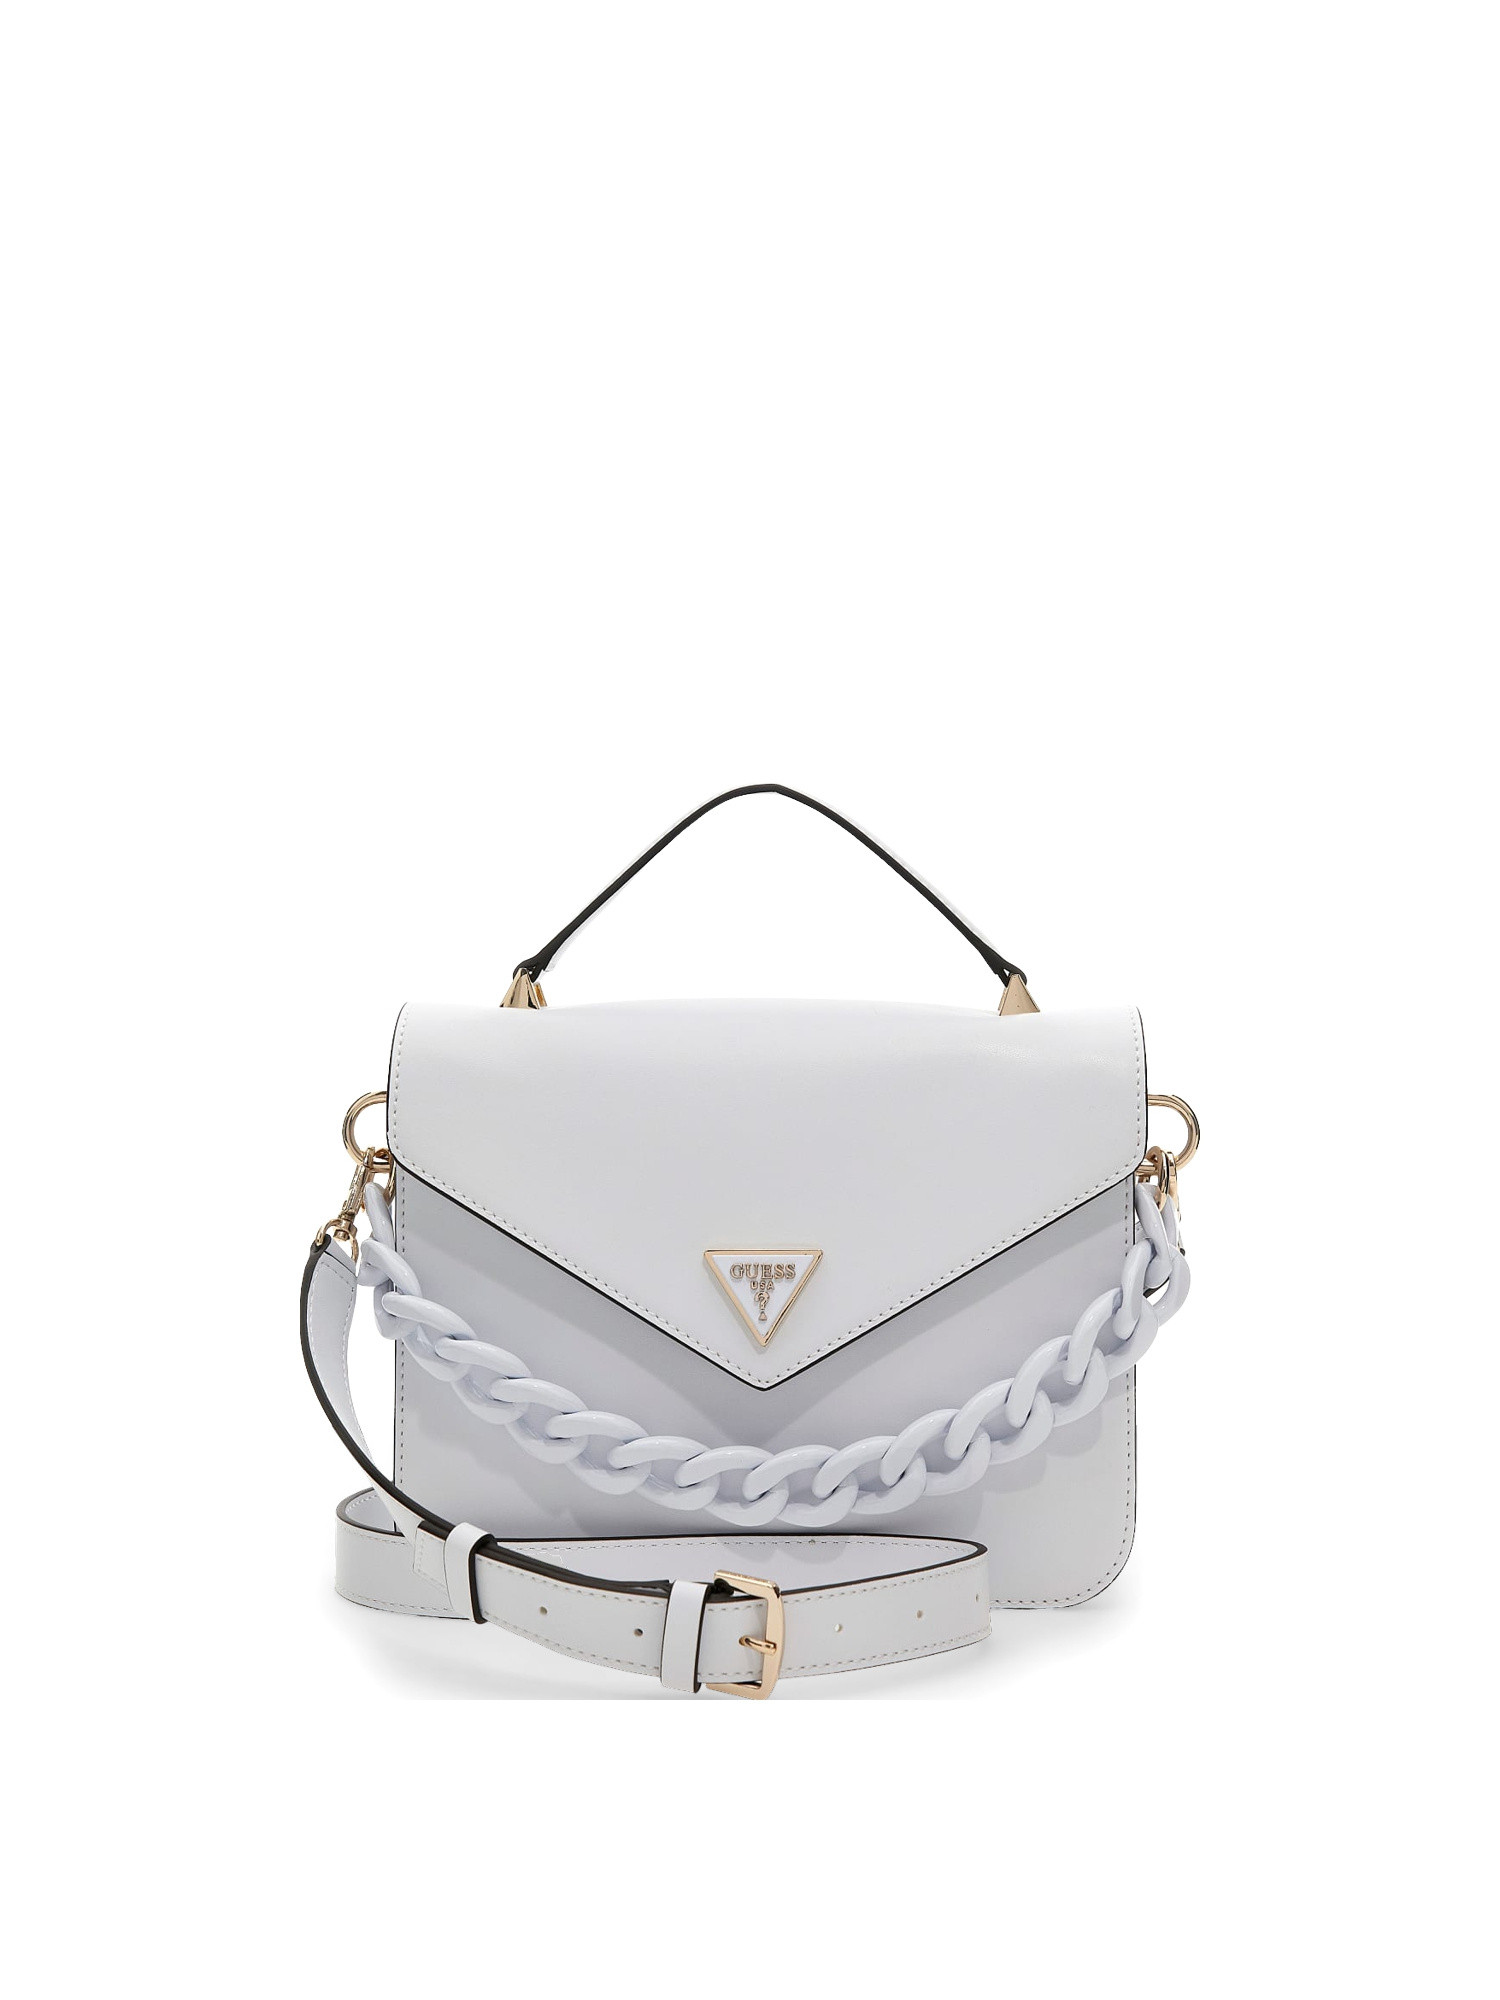 Guess - Corina handbag, White, large image number 0